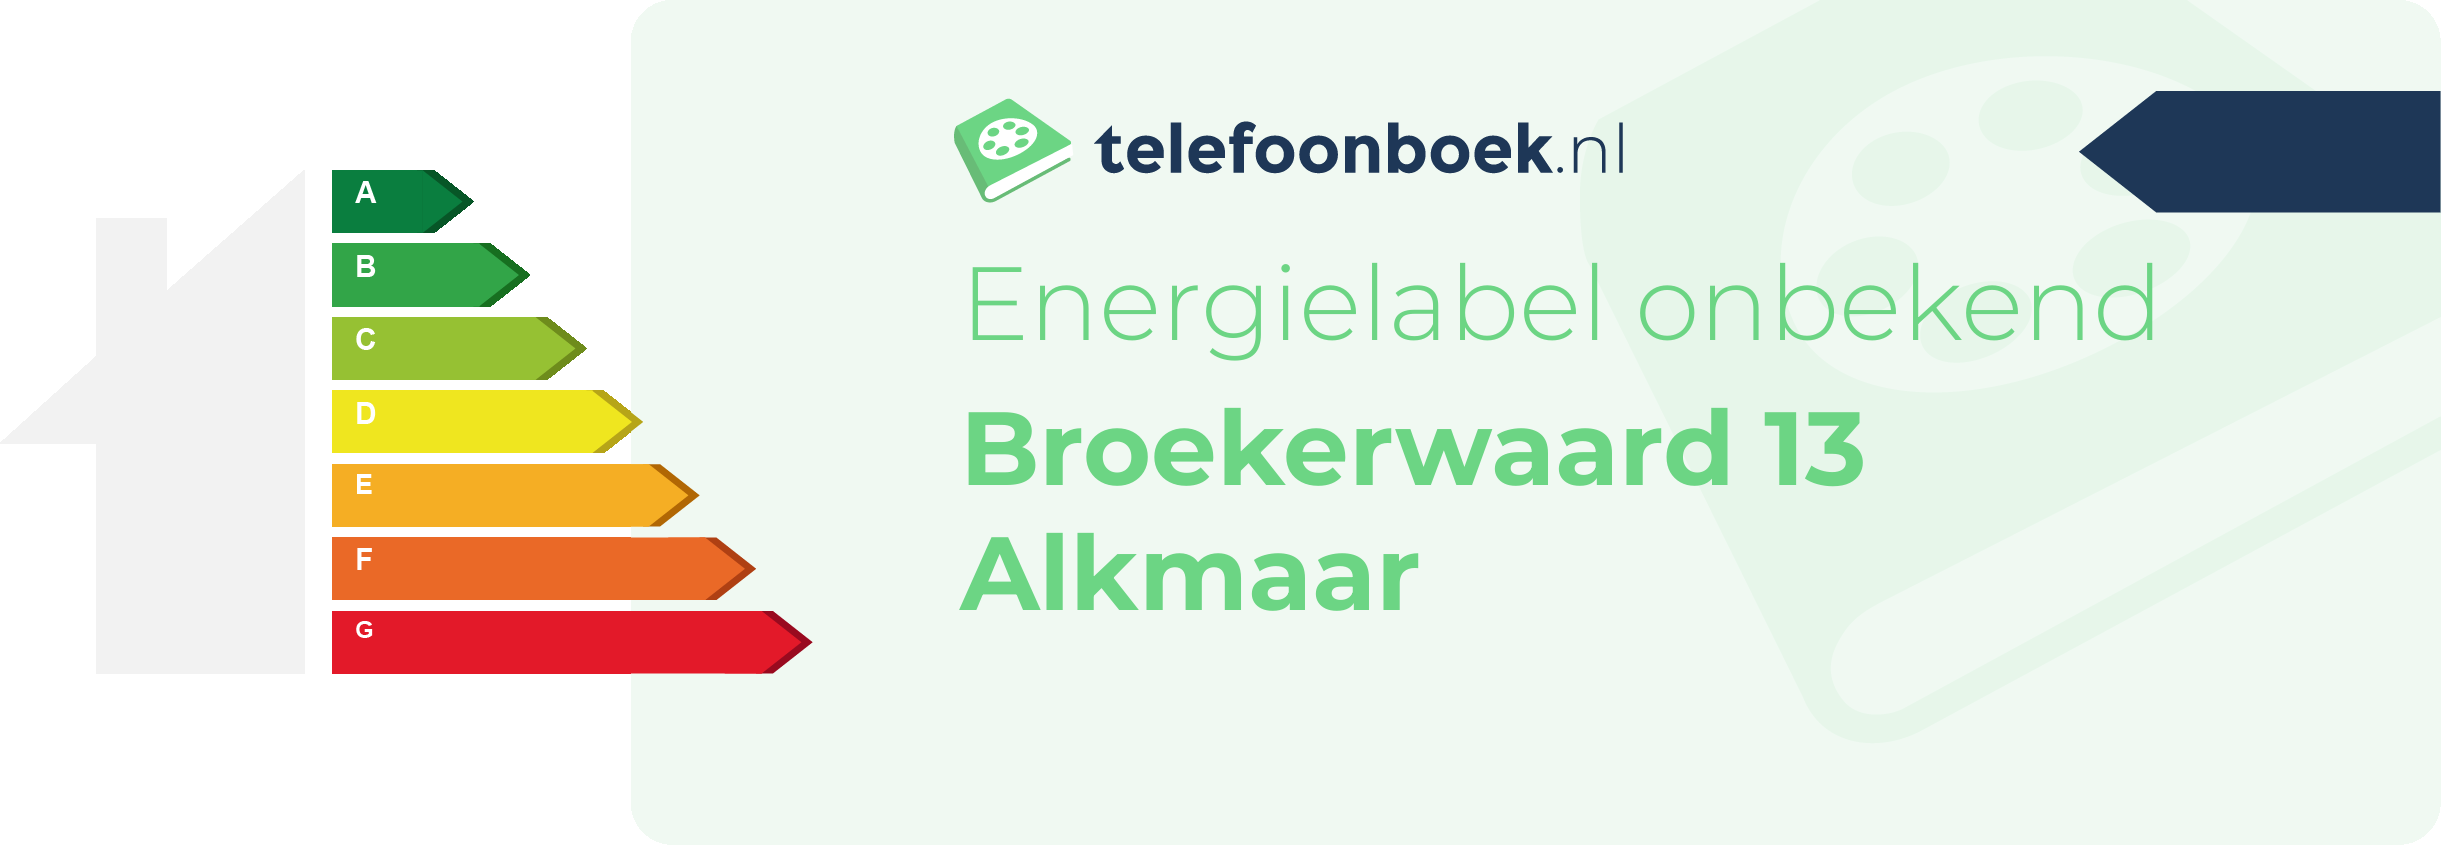 Energielabel Broekerwaard 13 Alkmaar